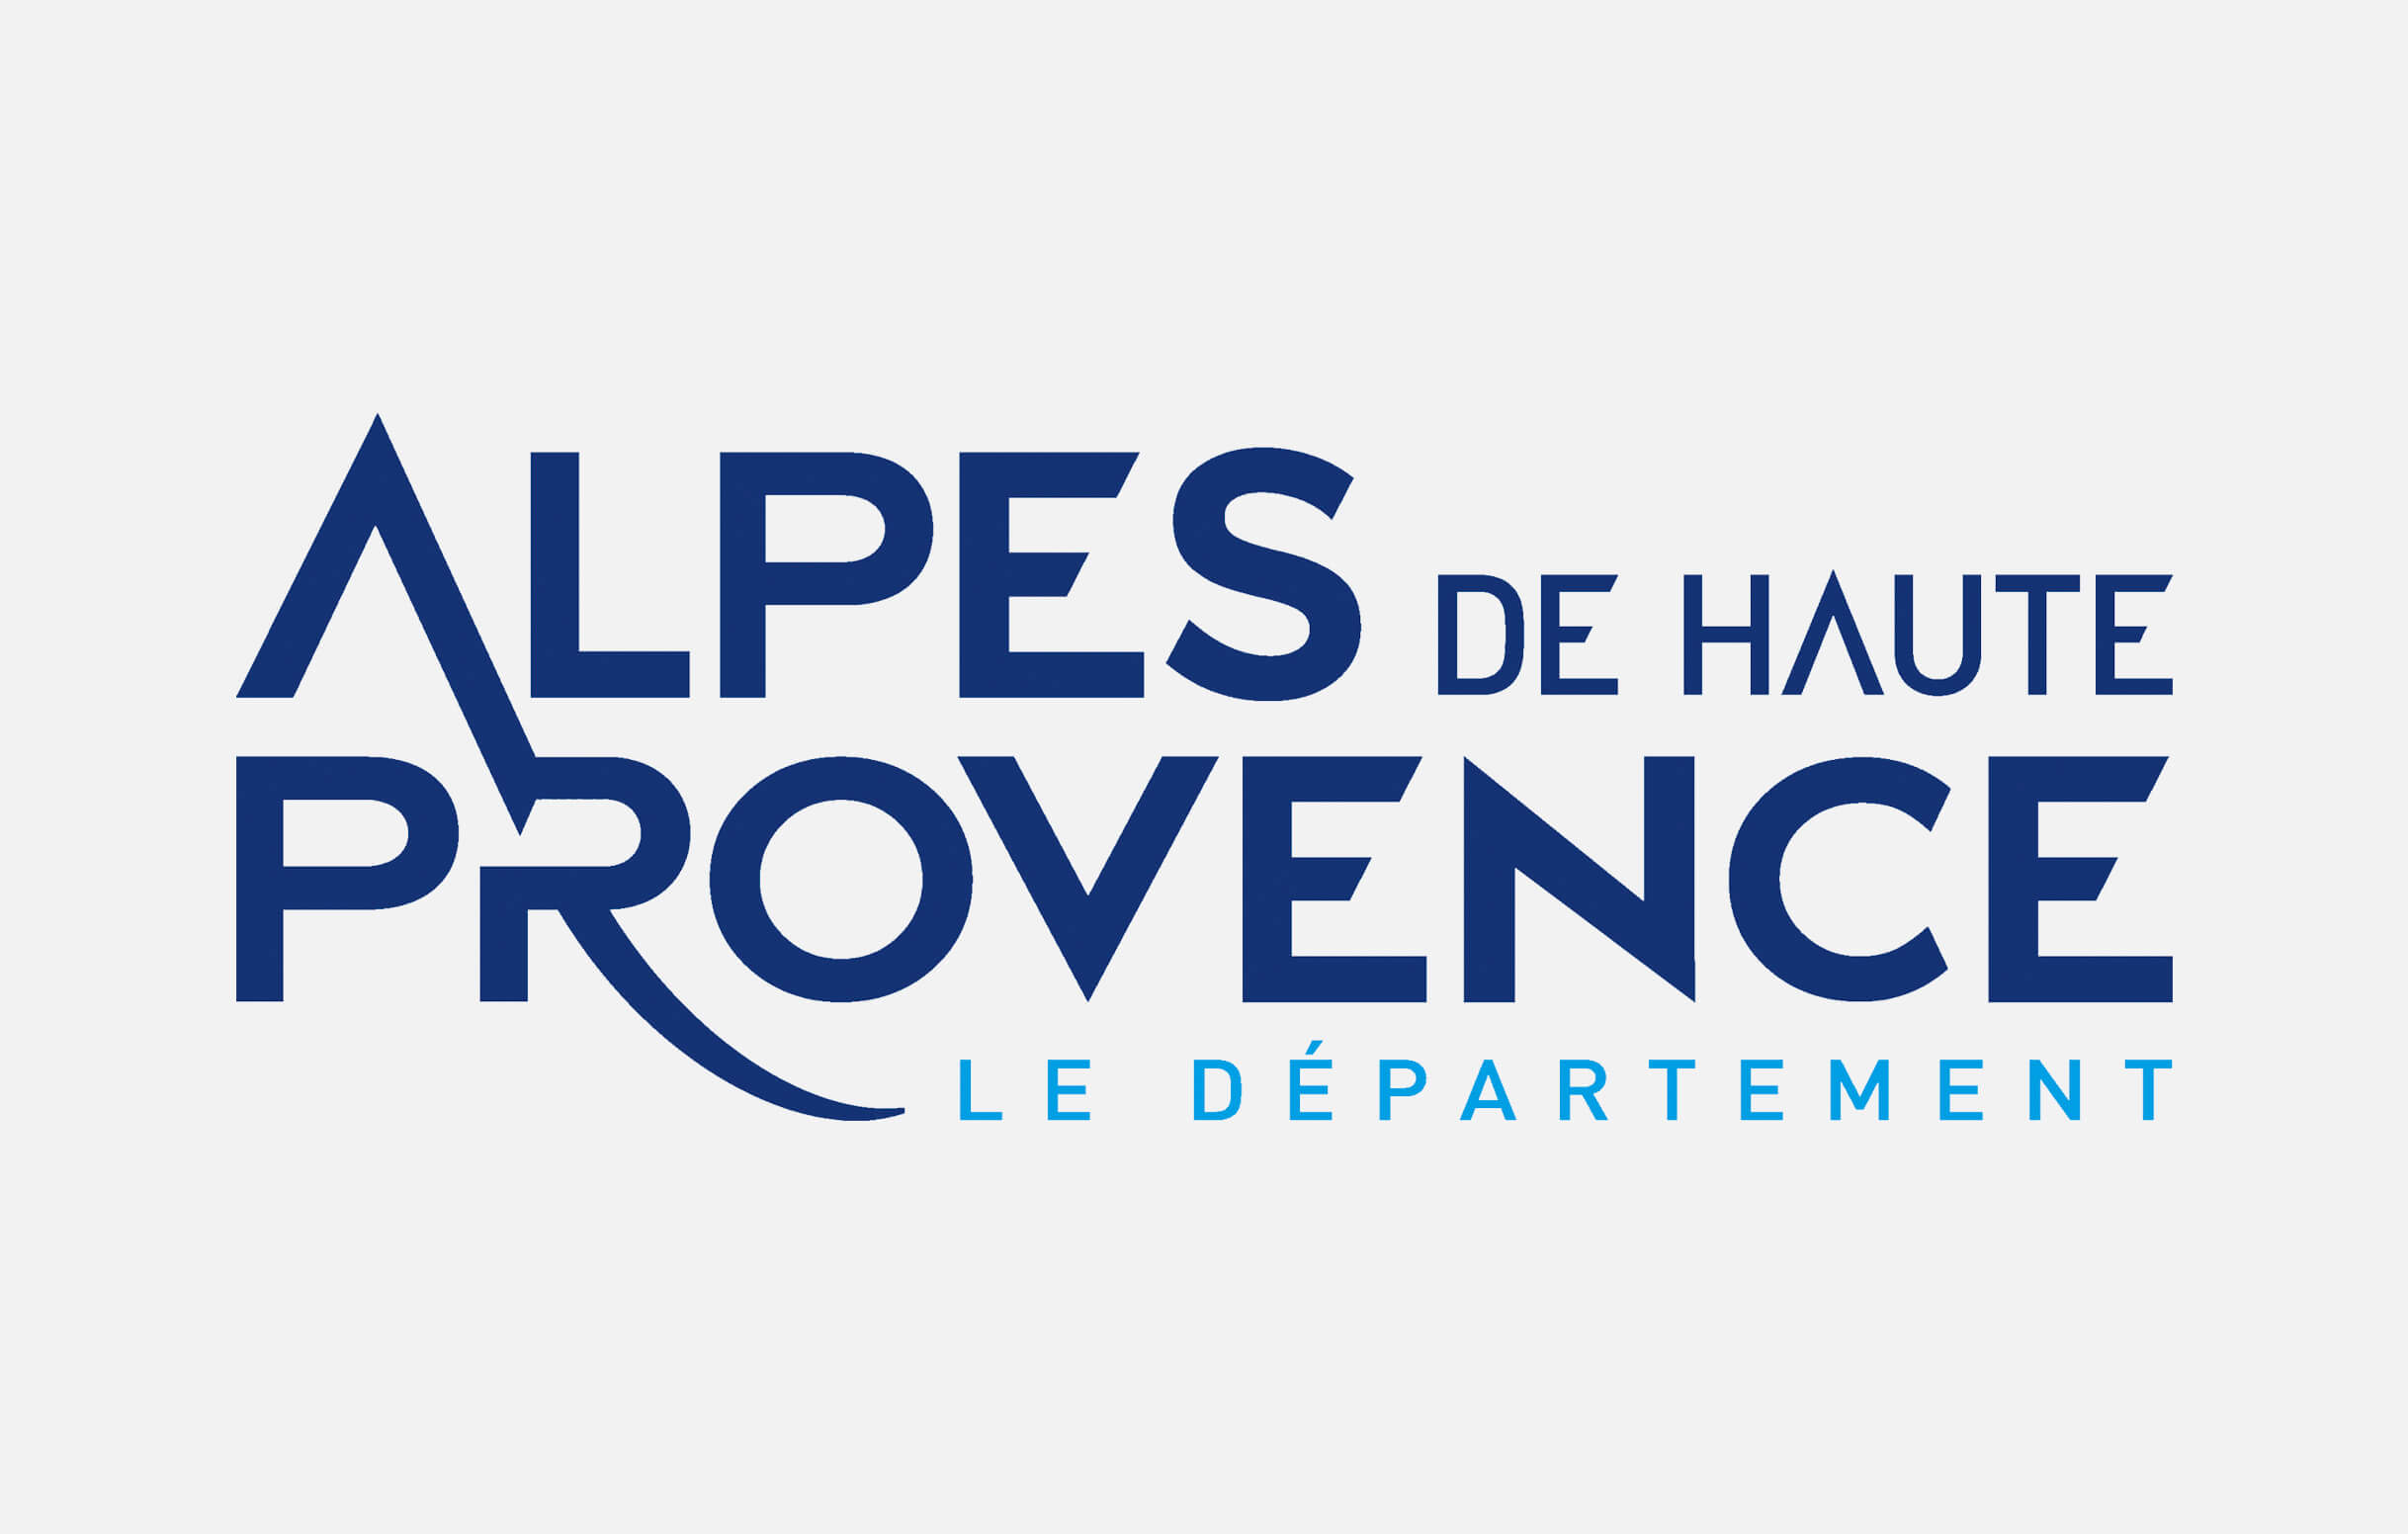 Alpes de Haute Provence